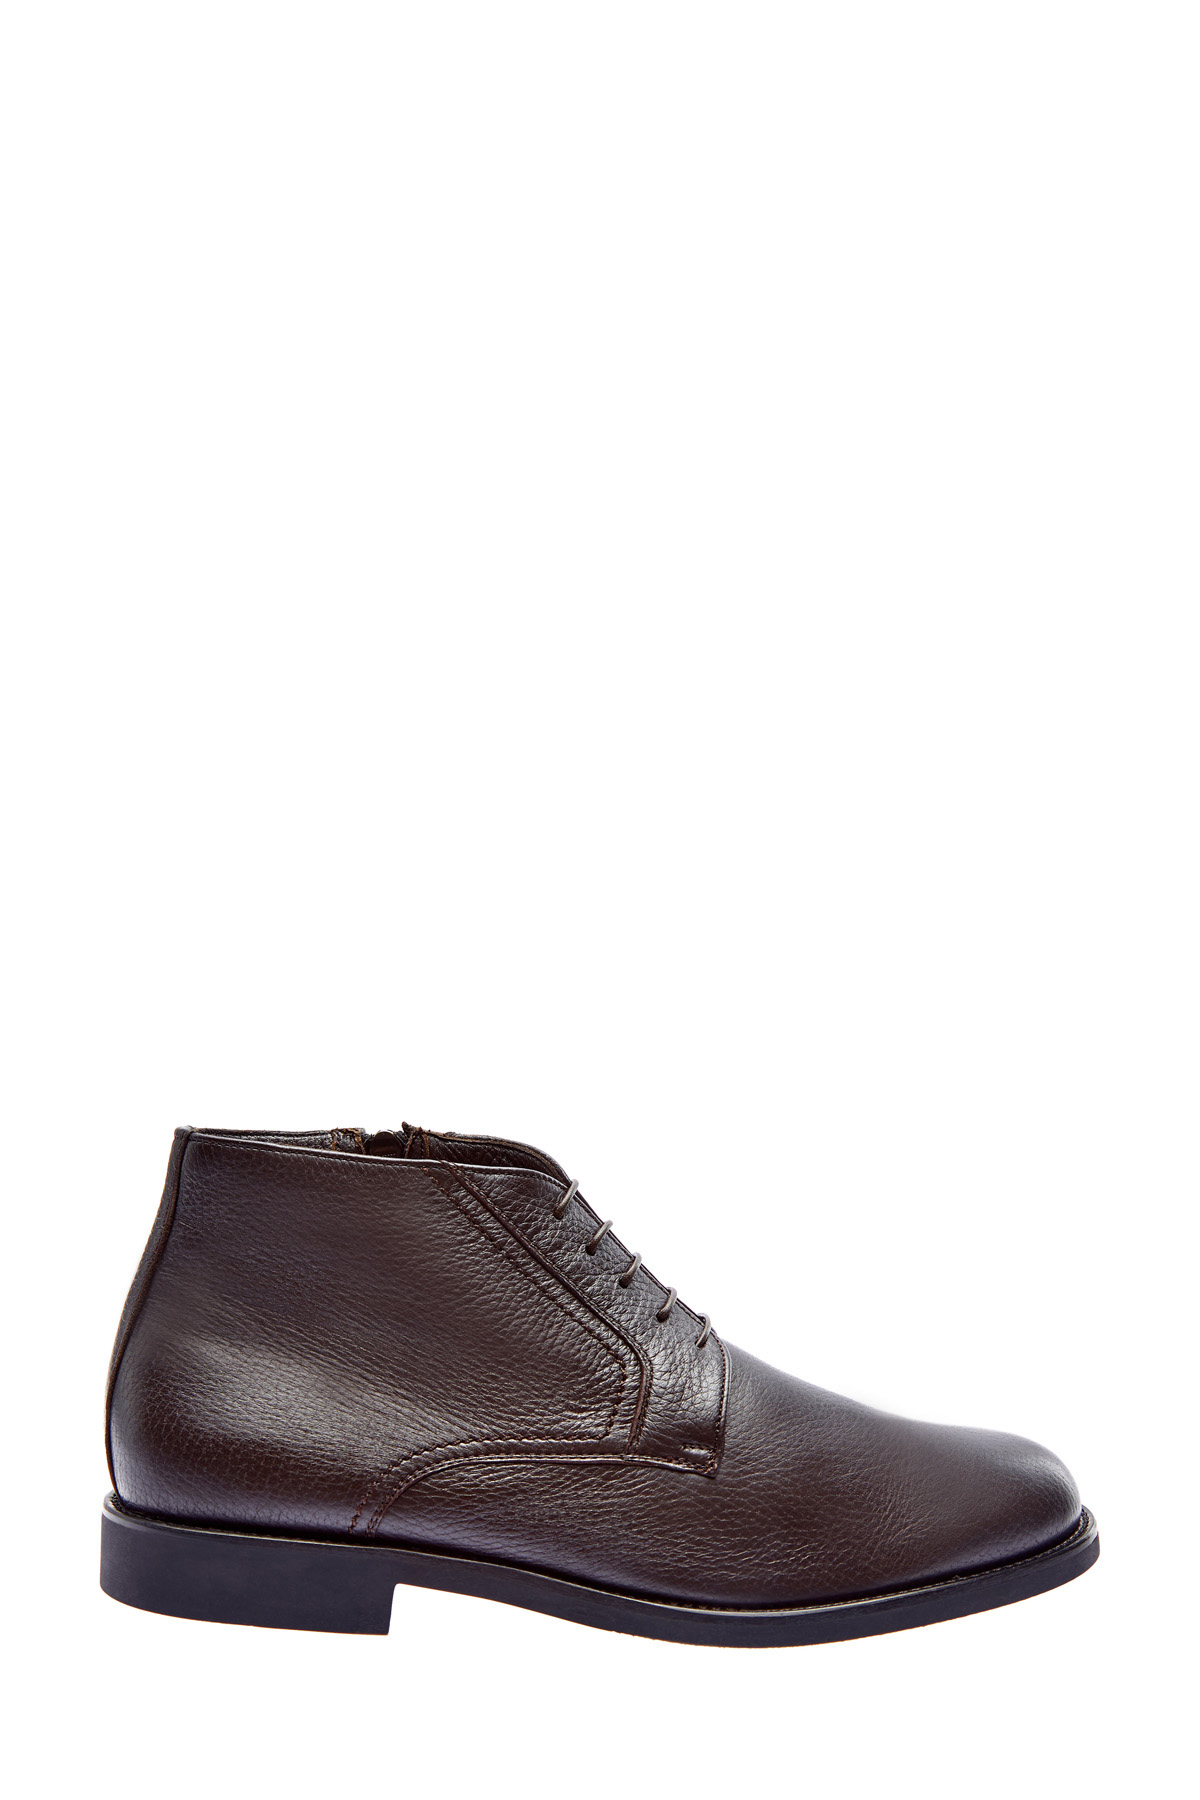 Высокие ботинки-дерби ручной работы из кожи оленя MORESCHI, цвет коричневый, размер 42.5;43;43.5 - фото 1